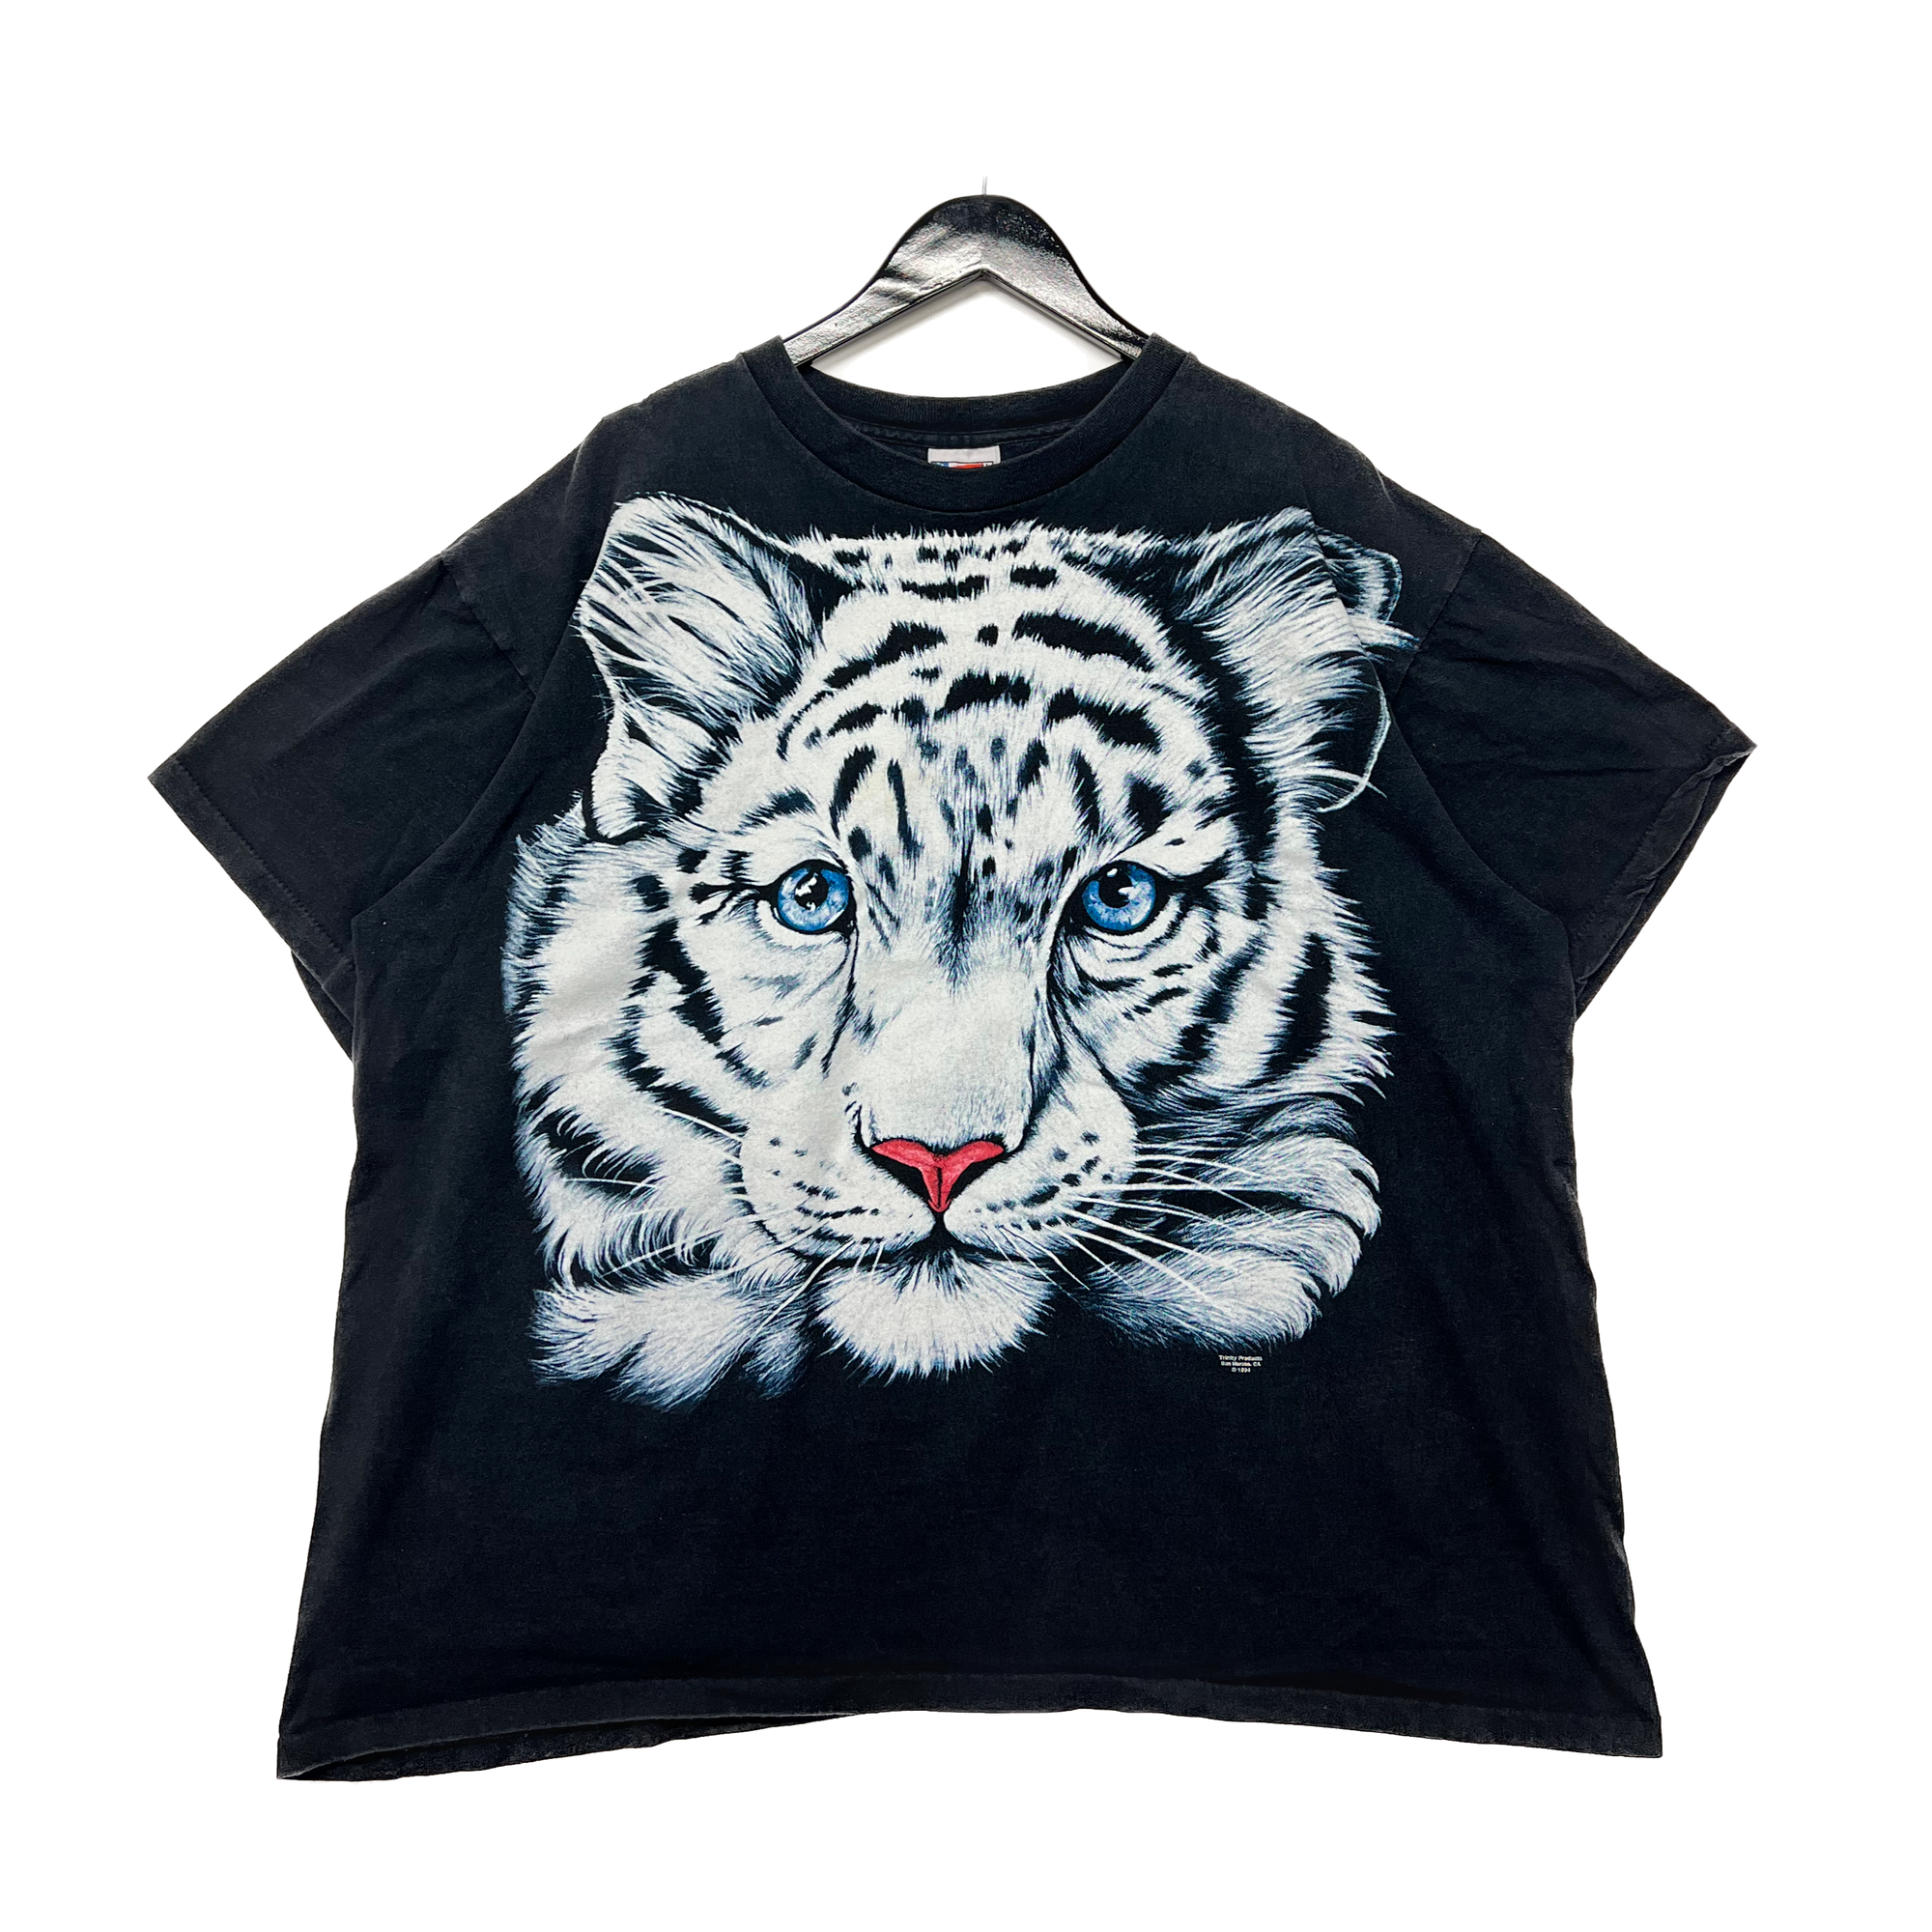 White Tiger T-shirt Size XL